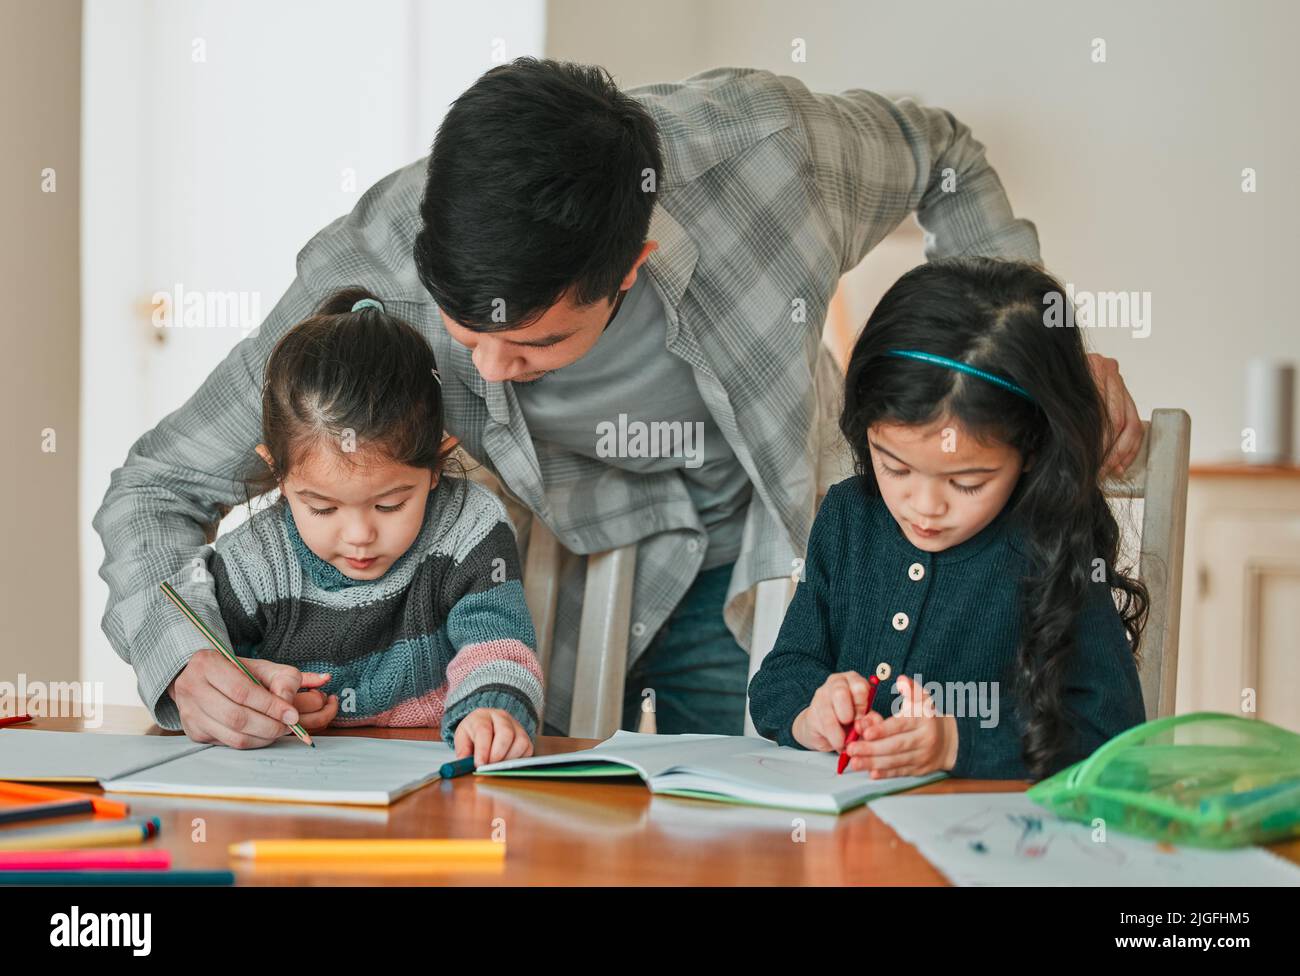 Wenn Sie diese beiden hinzufügen, was bekommen Sie: Ein junger Vater hilft seinen Töchtern bei ihren Hausaufgaben. Stockfoto